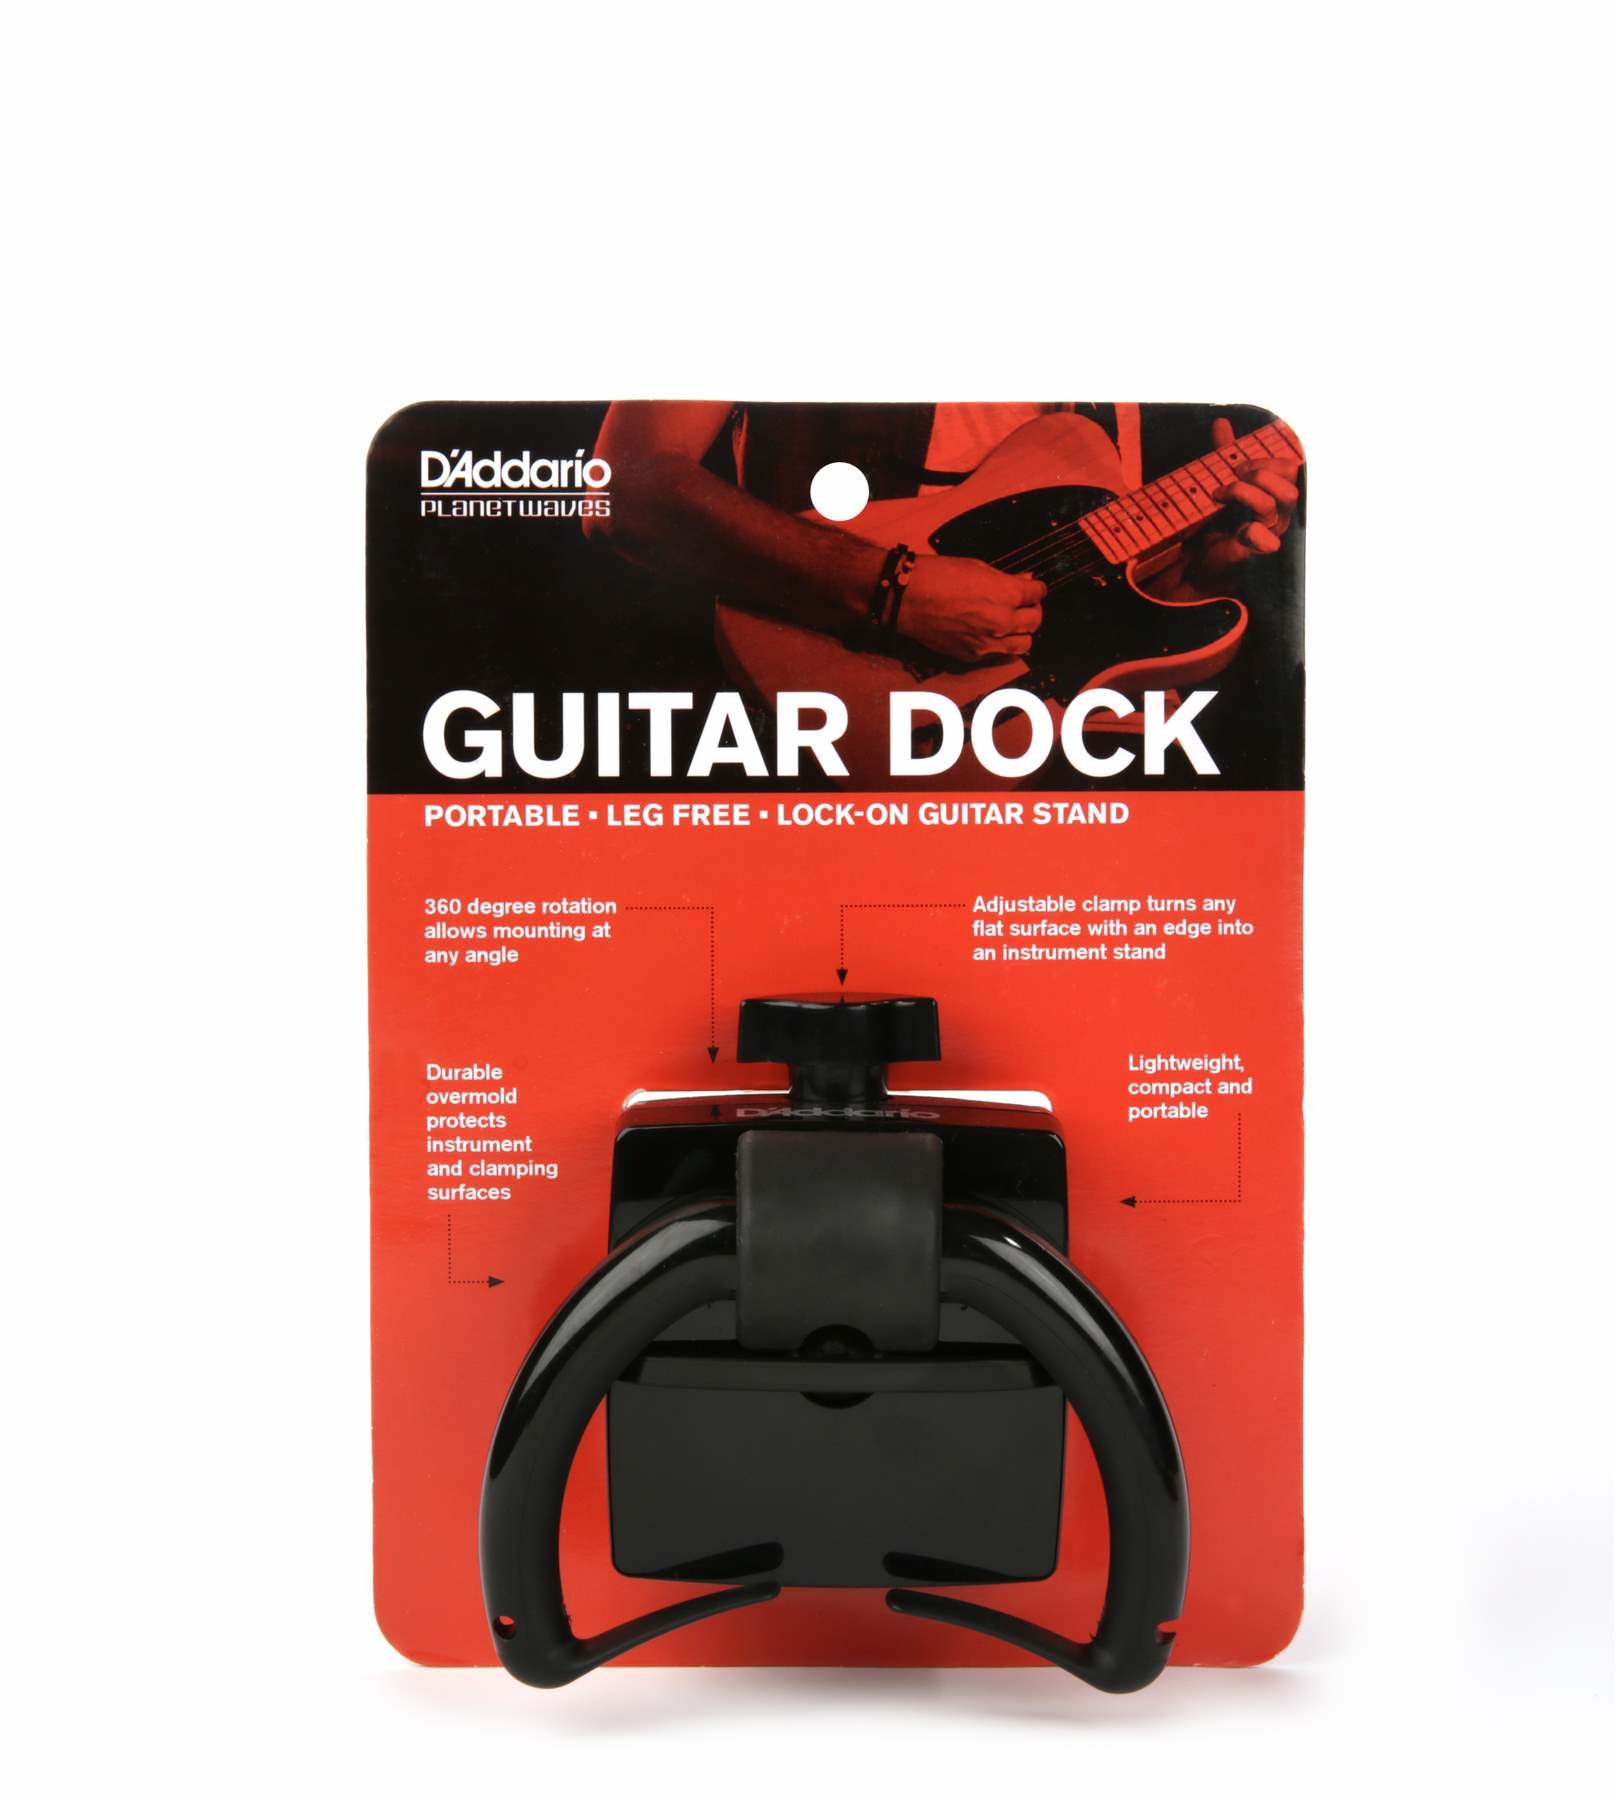 نگه دارنده گیتار داداریو مدل guitar dock daddario